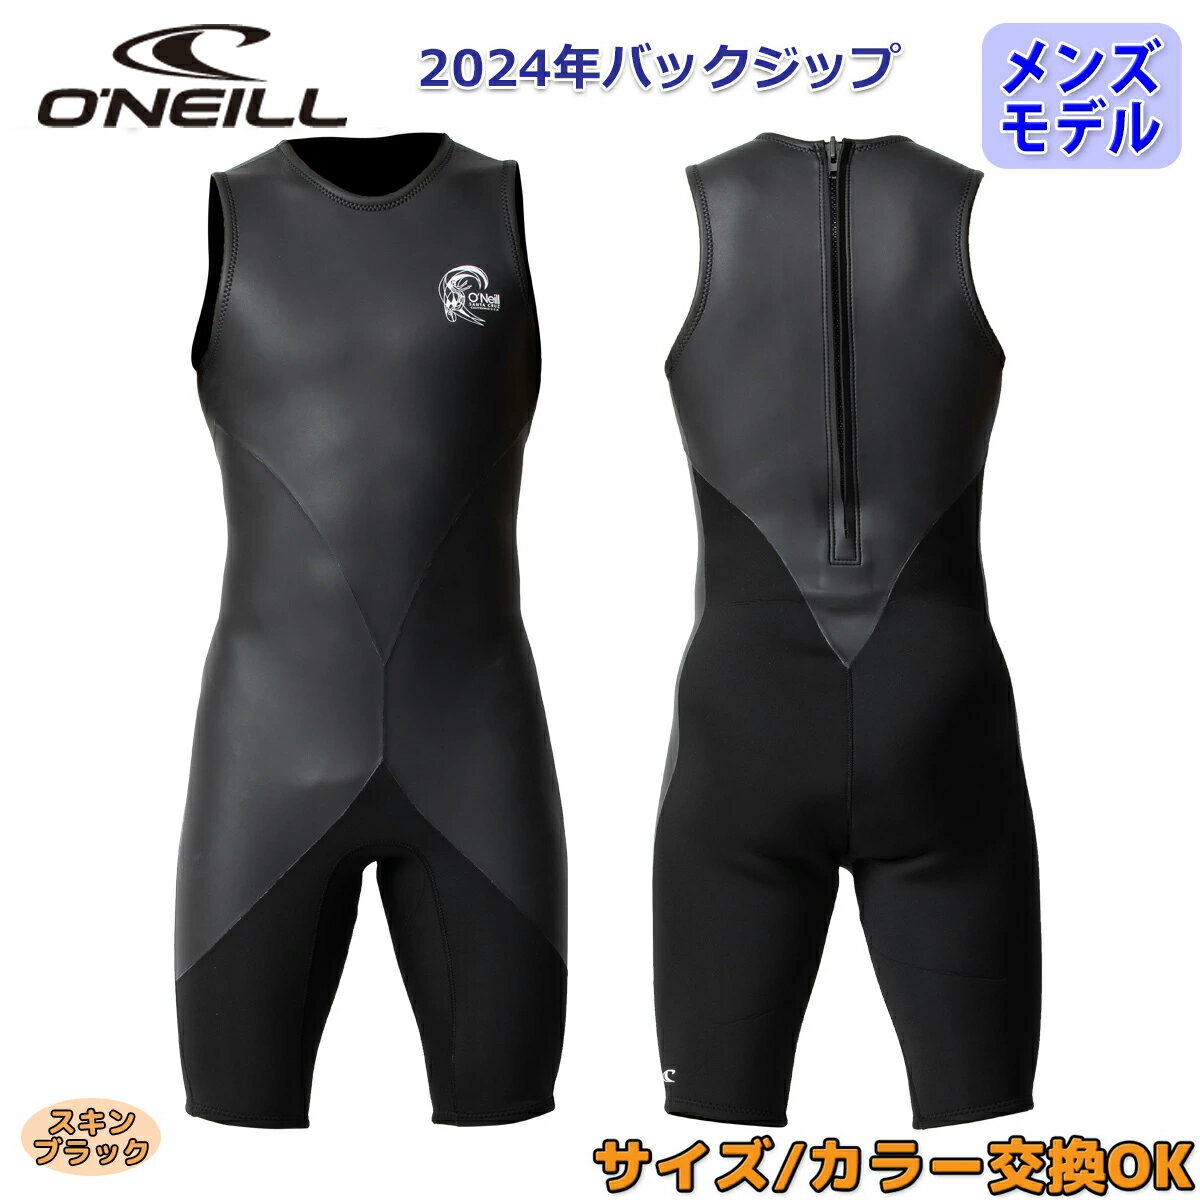 24 O'NEILL オニール ショートジョン ウェットスーツ ウエットスーツ バックジップ バリュー 春夏用 メンズモデル 2024年 SUPERLITE CLASSIC スーパーライトクラシック品番 WSS-301A3 日本正規品